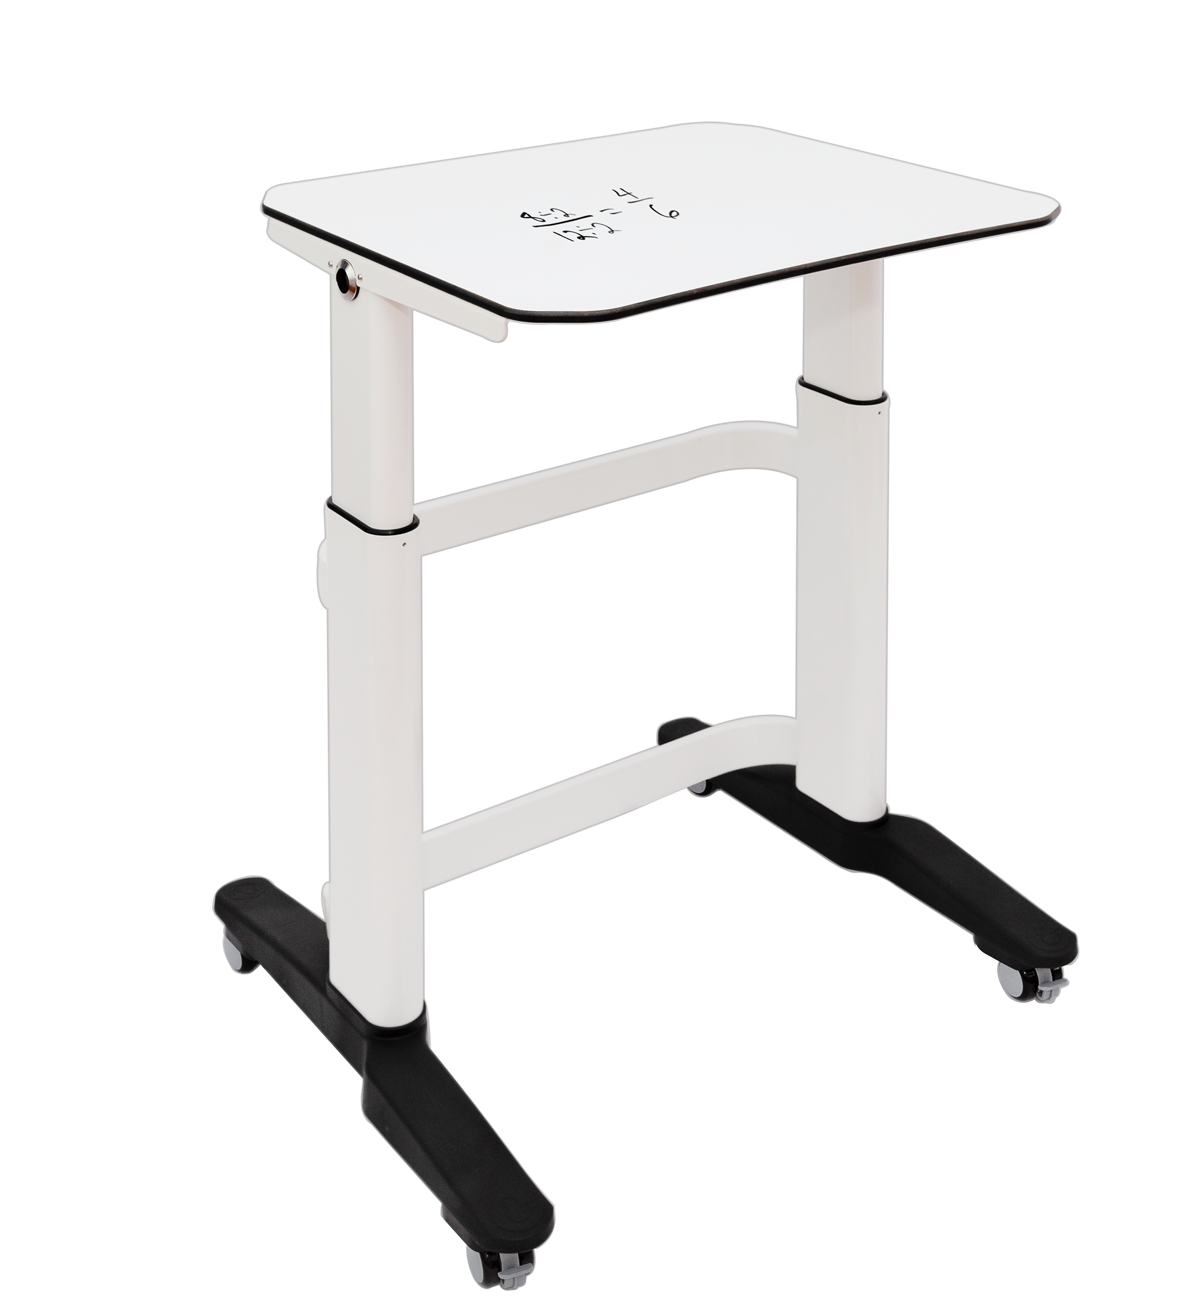 Amperstand-Small Desk-Writable-50mm Castors